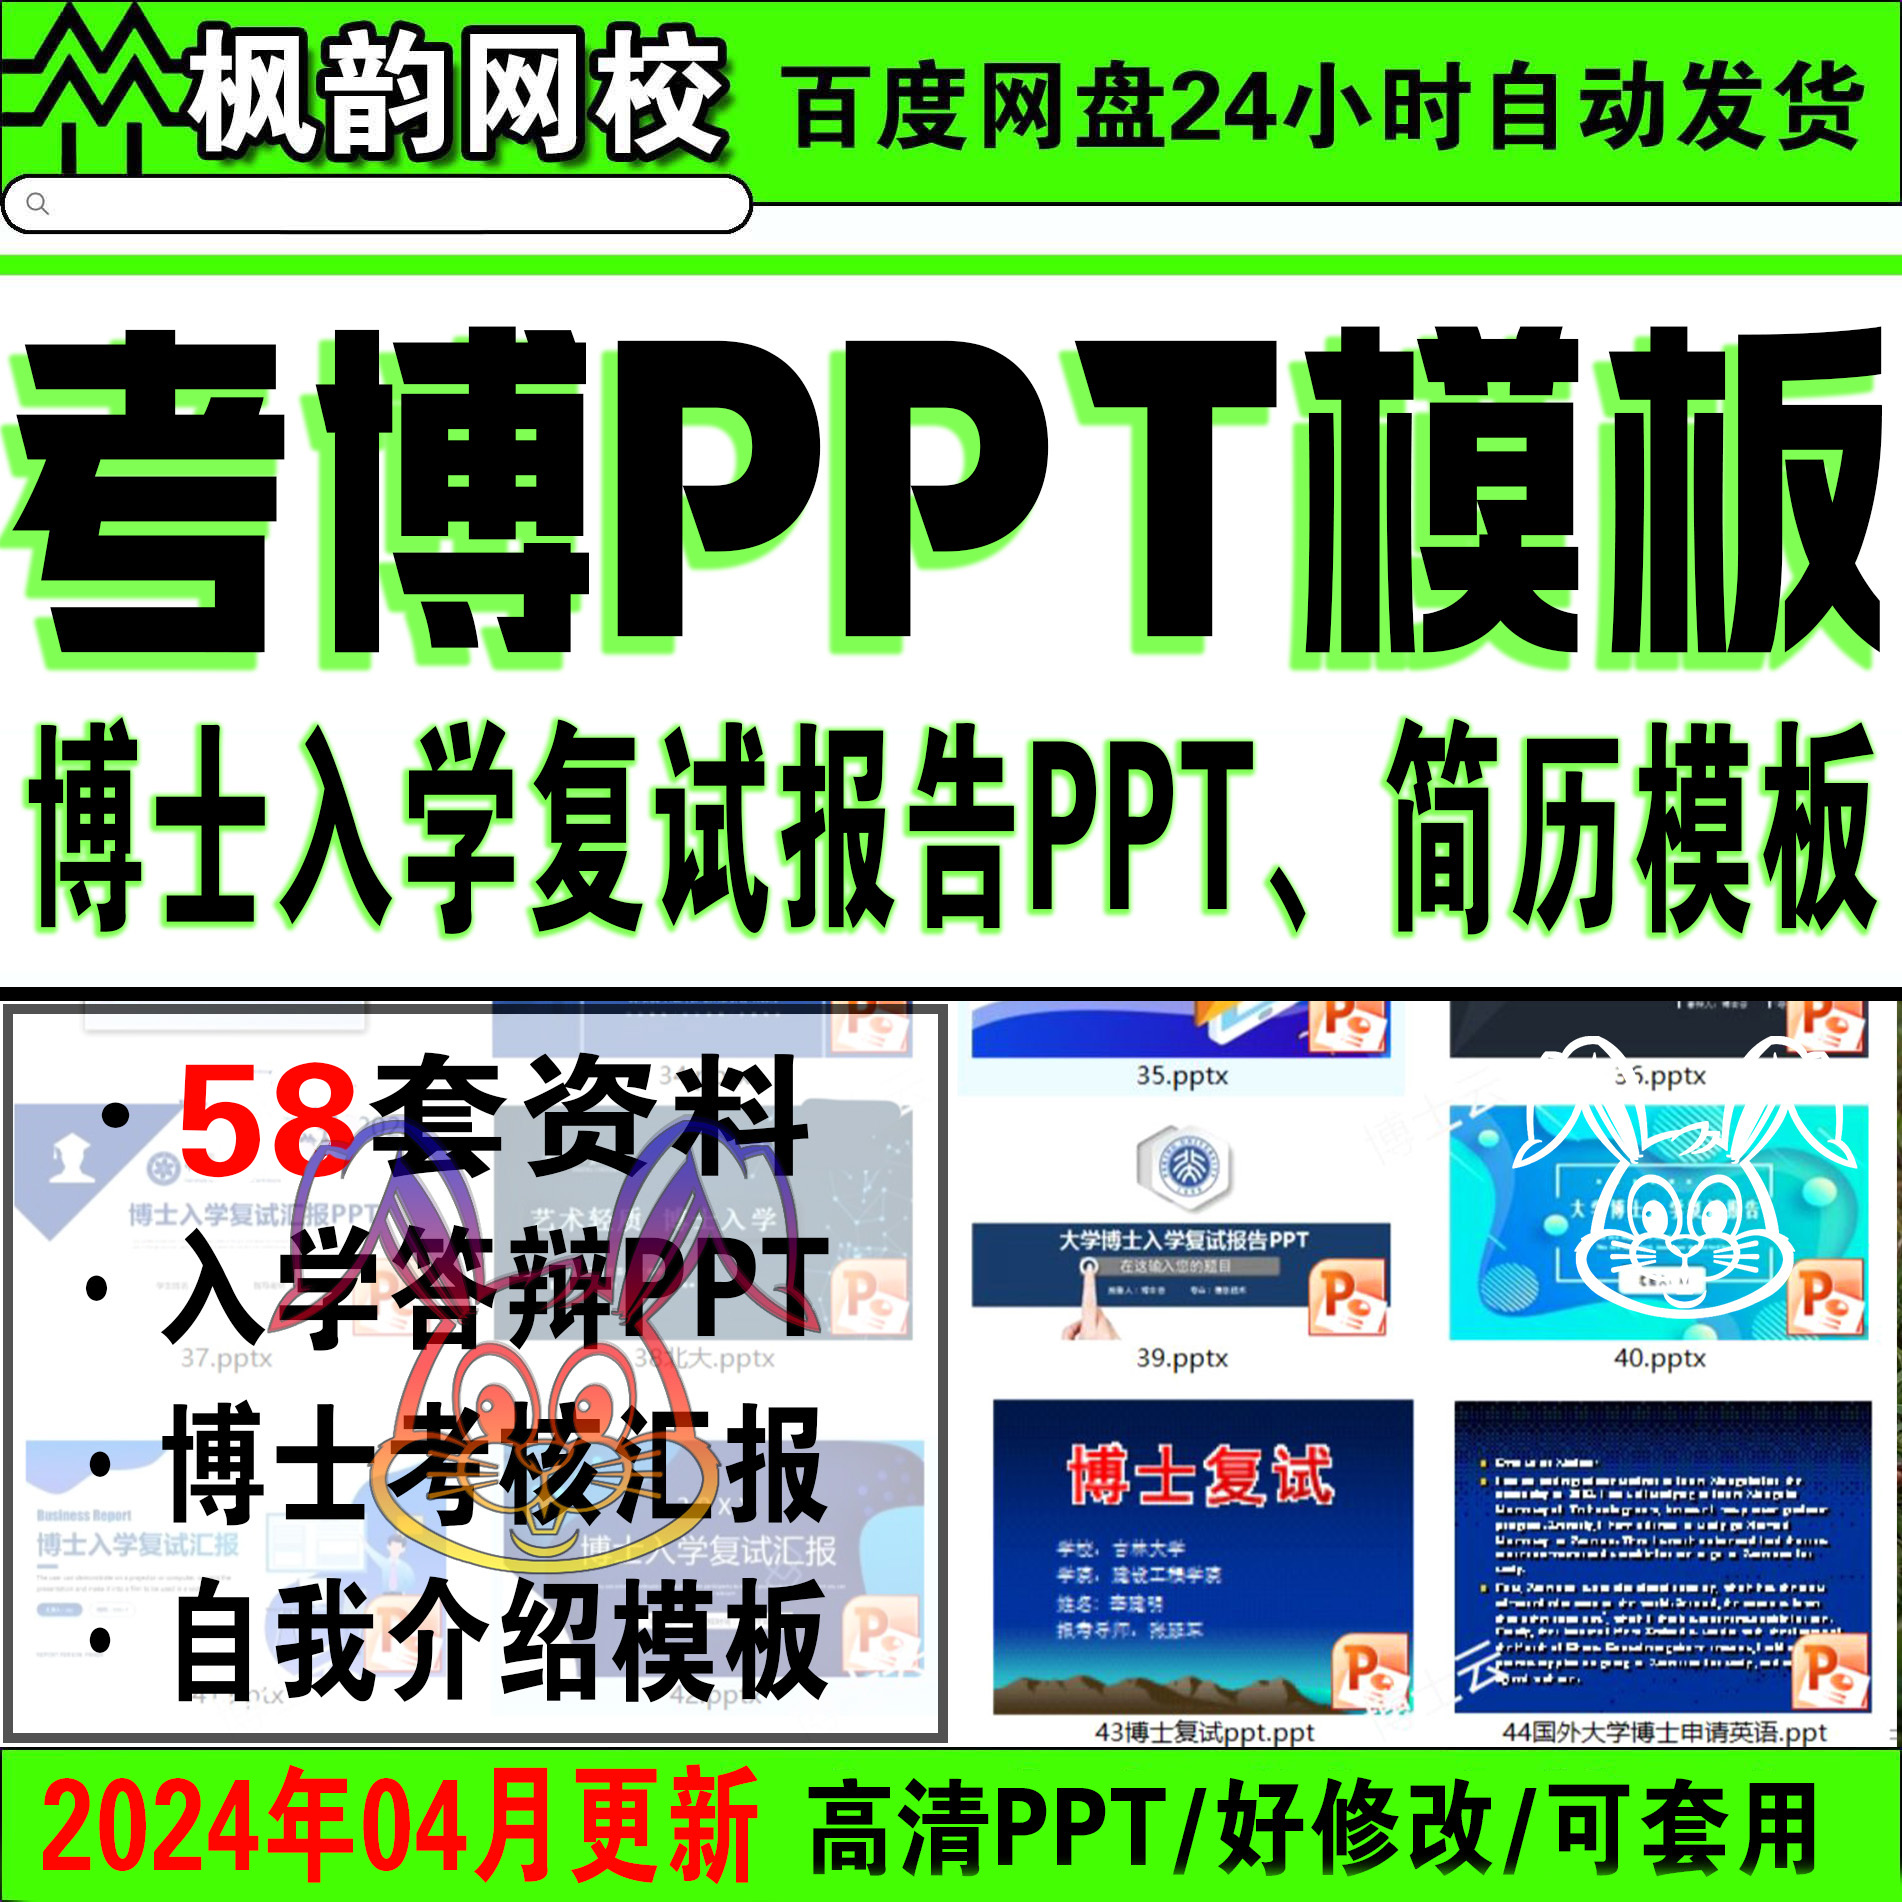 考博PPT博士申请PPT考核汇报复试申博自我介绍985入学答辩PPT模板